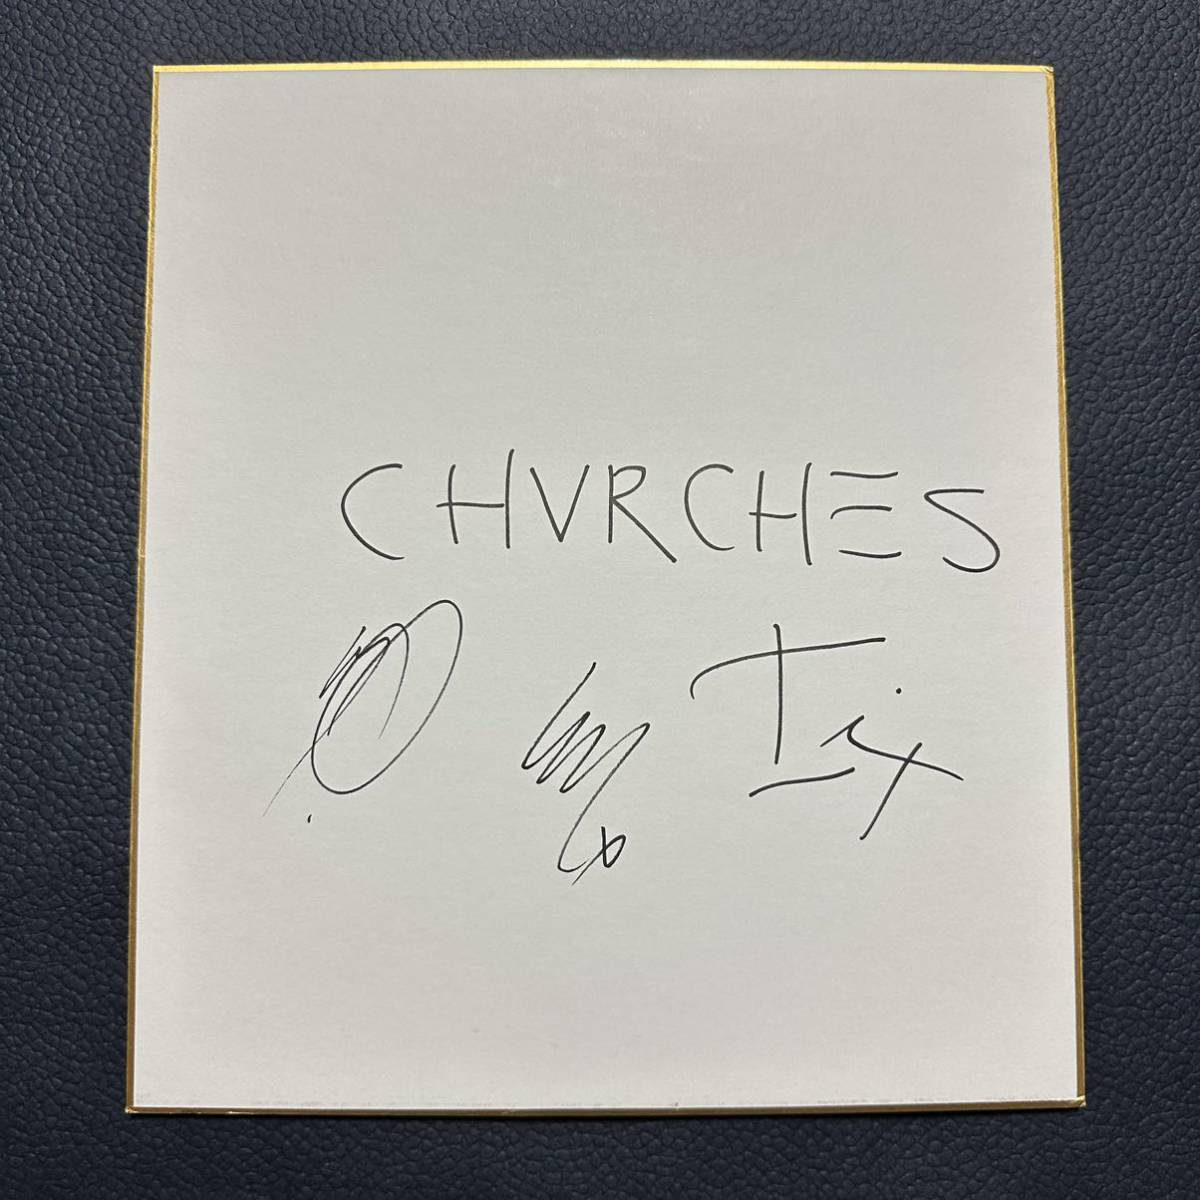 CHVRCHES Papier coloré autographié CHVRCHES Rock Band Album CD Mneskin Marshmello, Produits de célébrités, signe